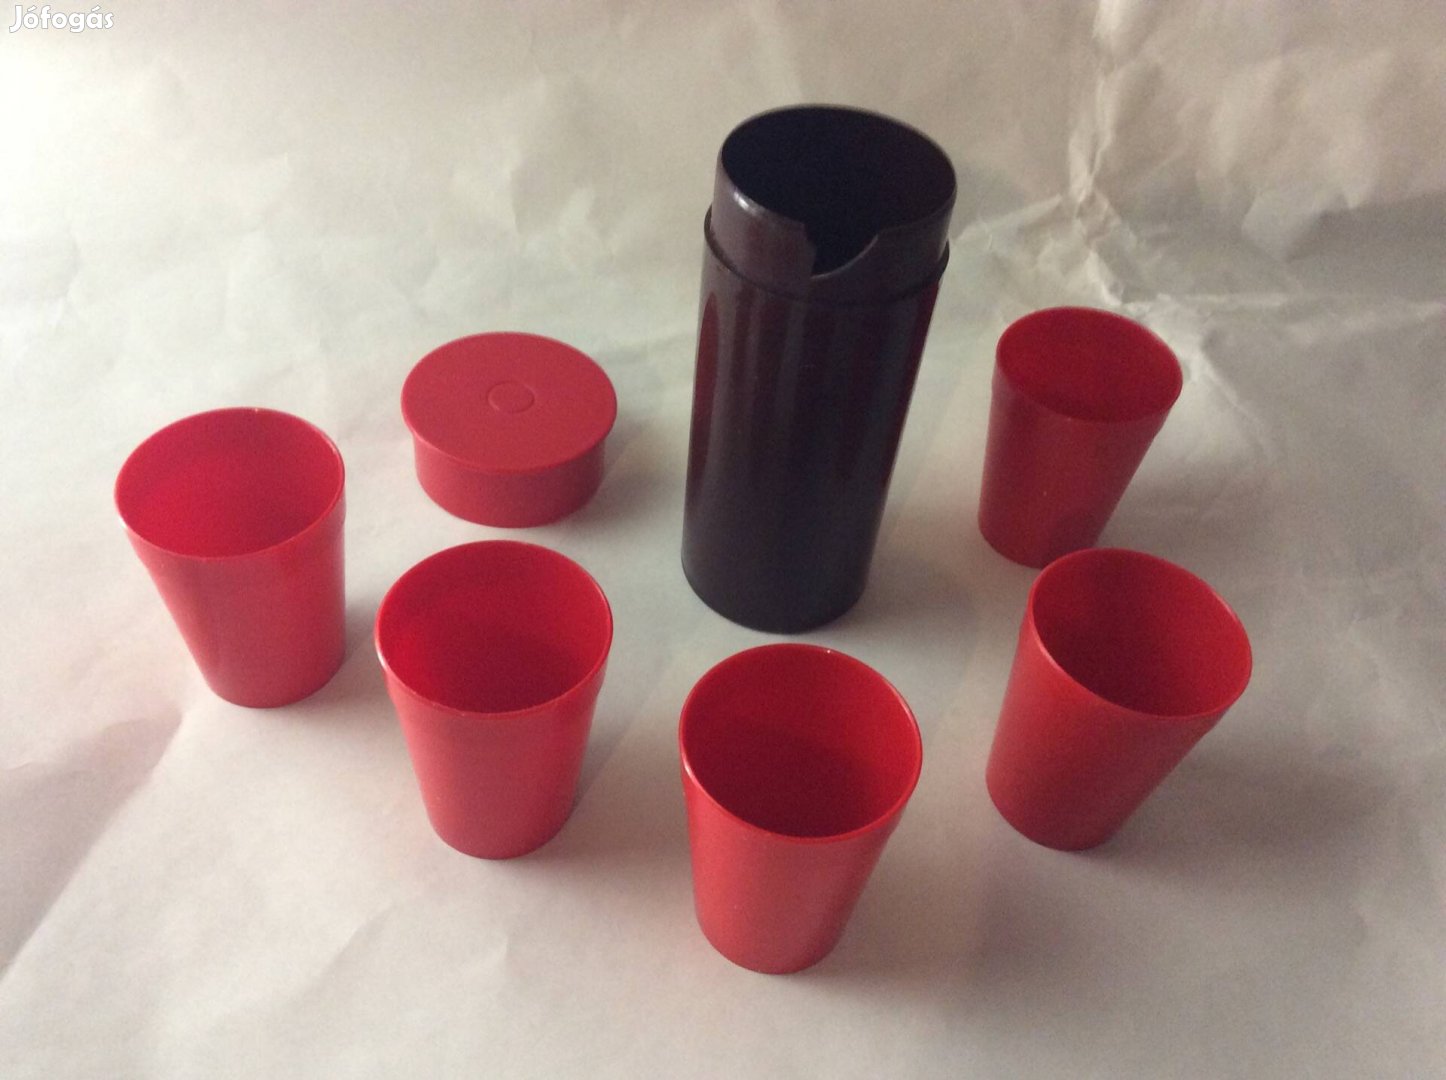 Műanyag röviditalos pohár készlet kiránduláshoz